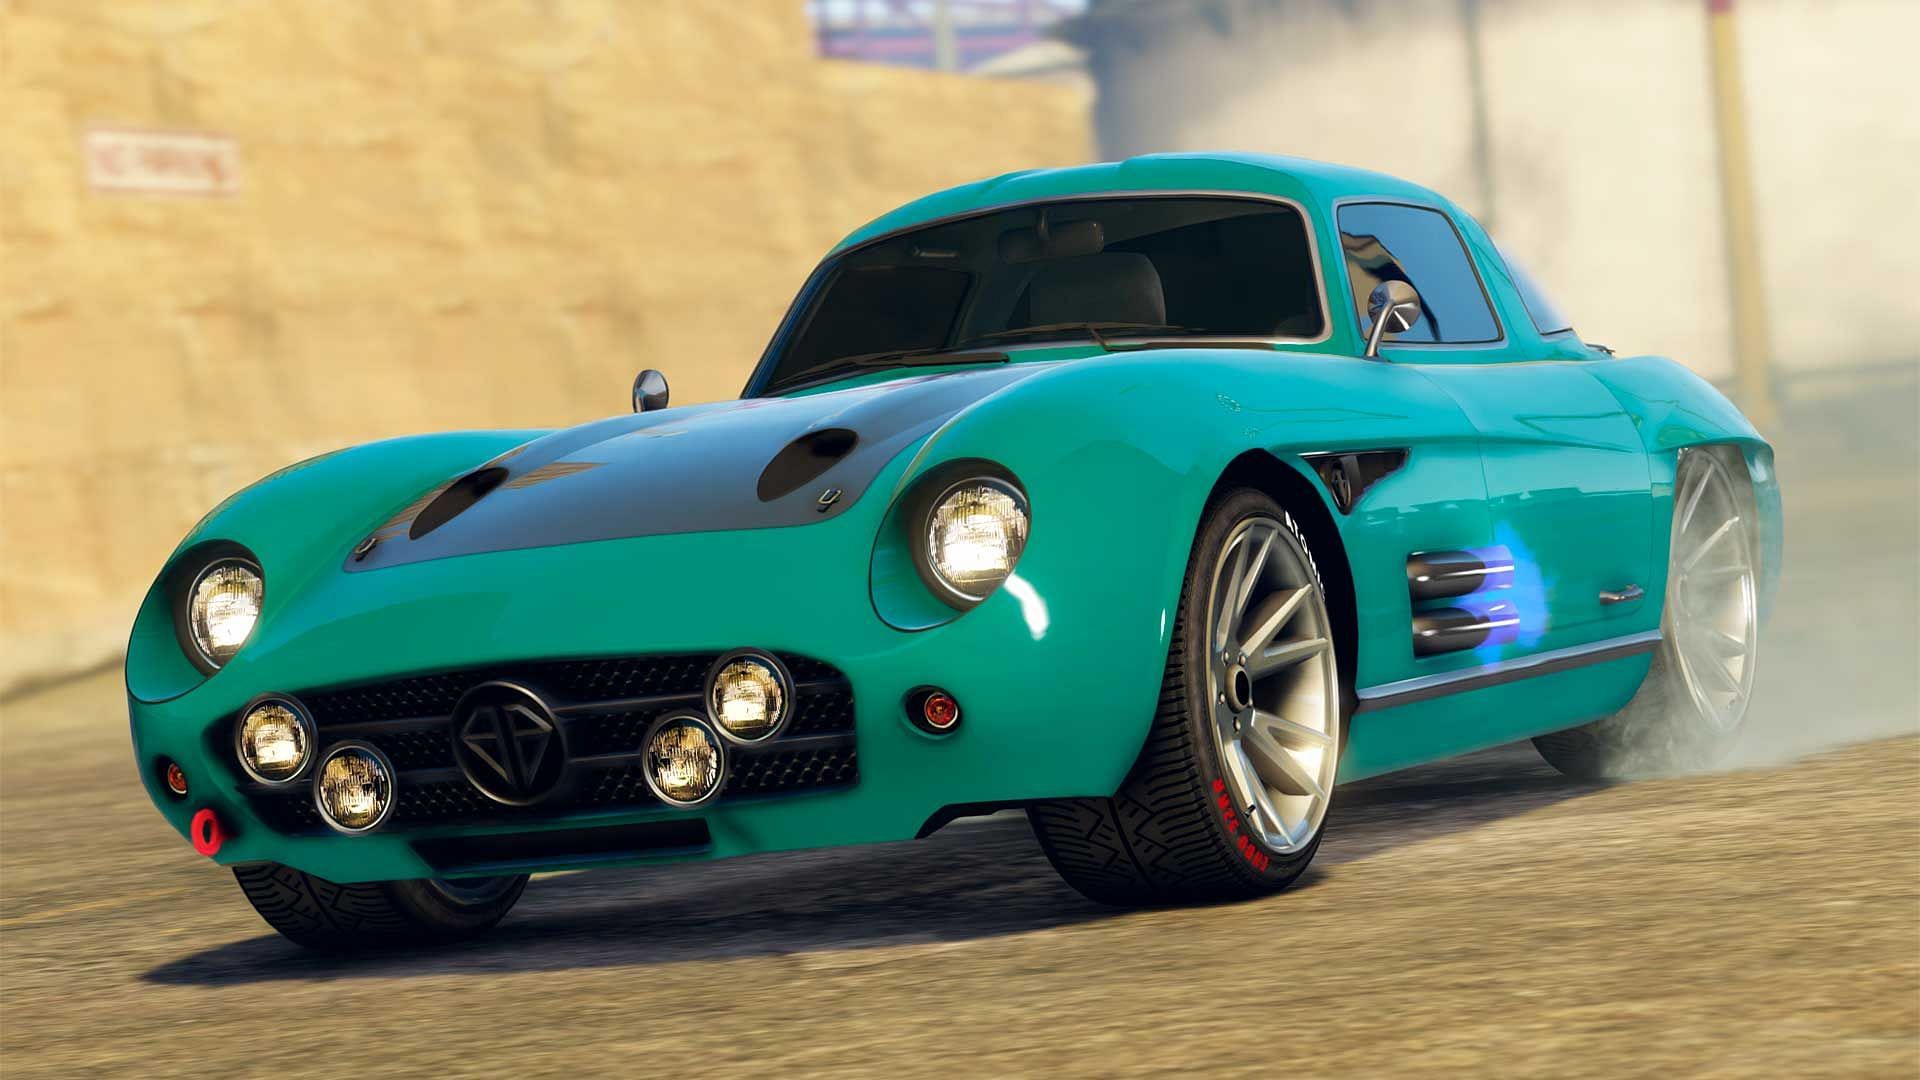 The Stirling GT (Image via Rockstar Games)